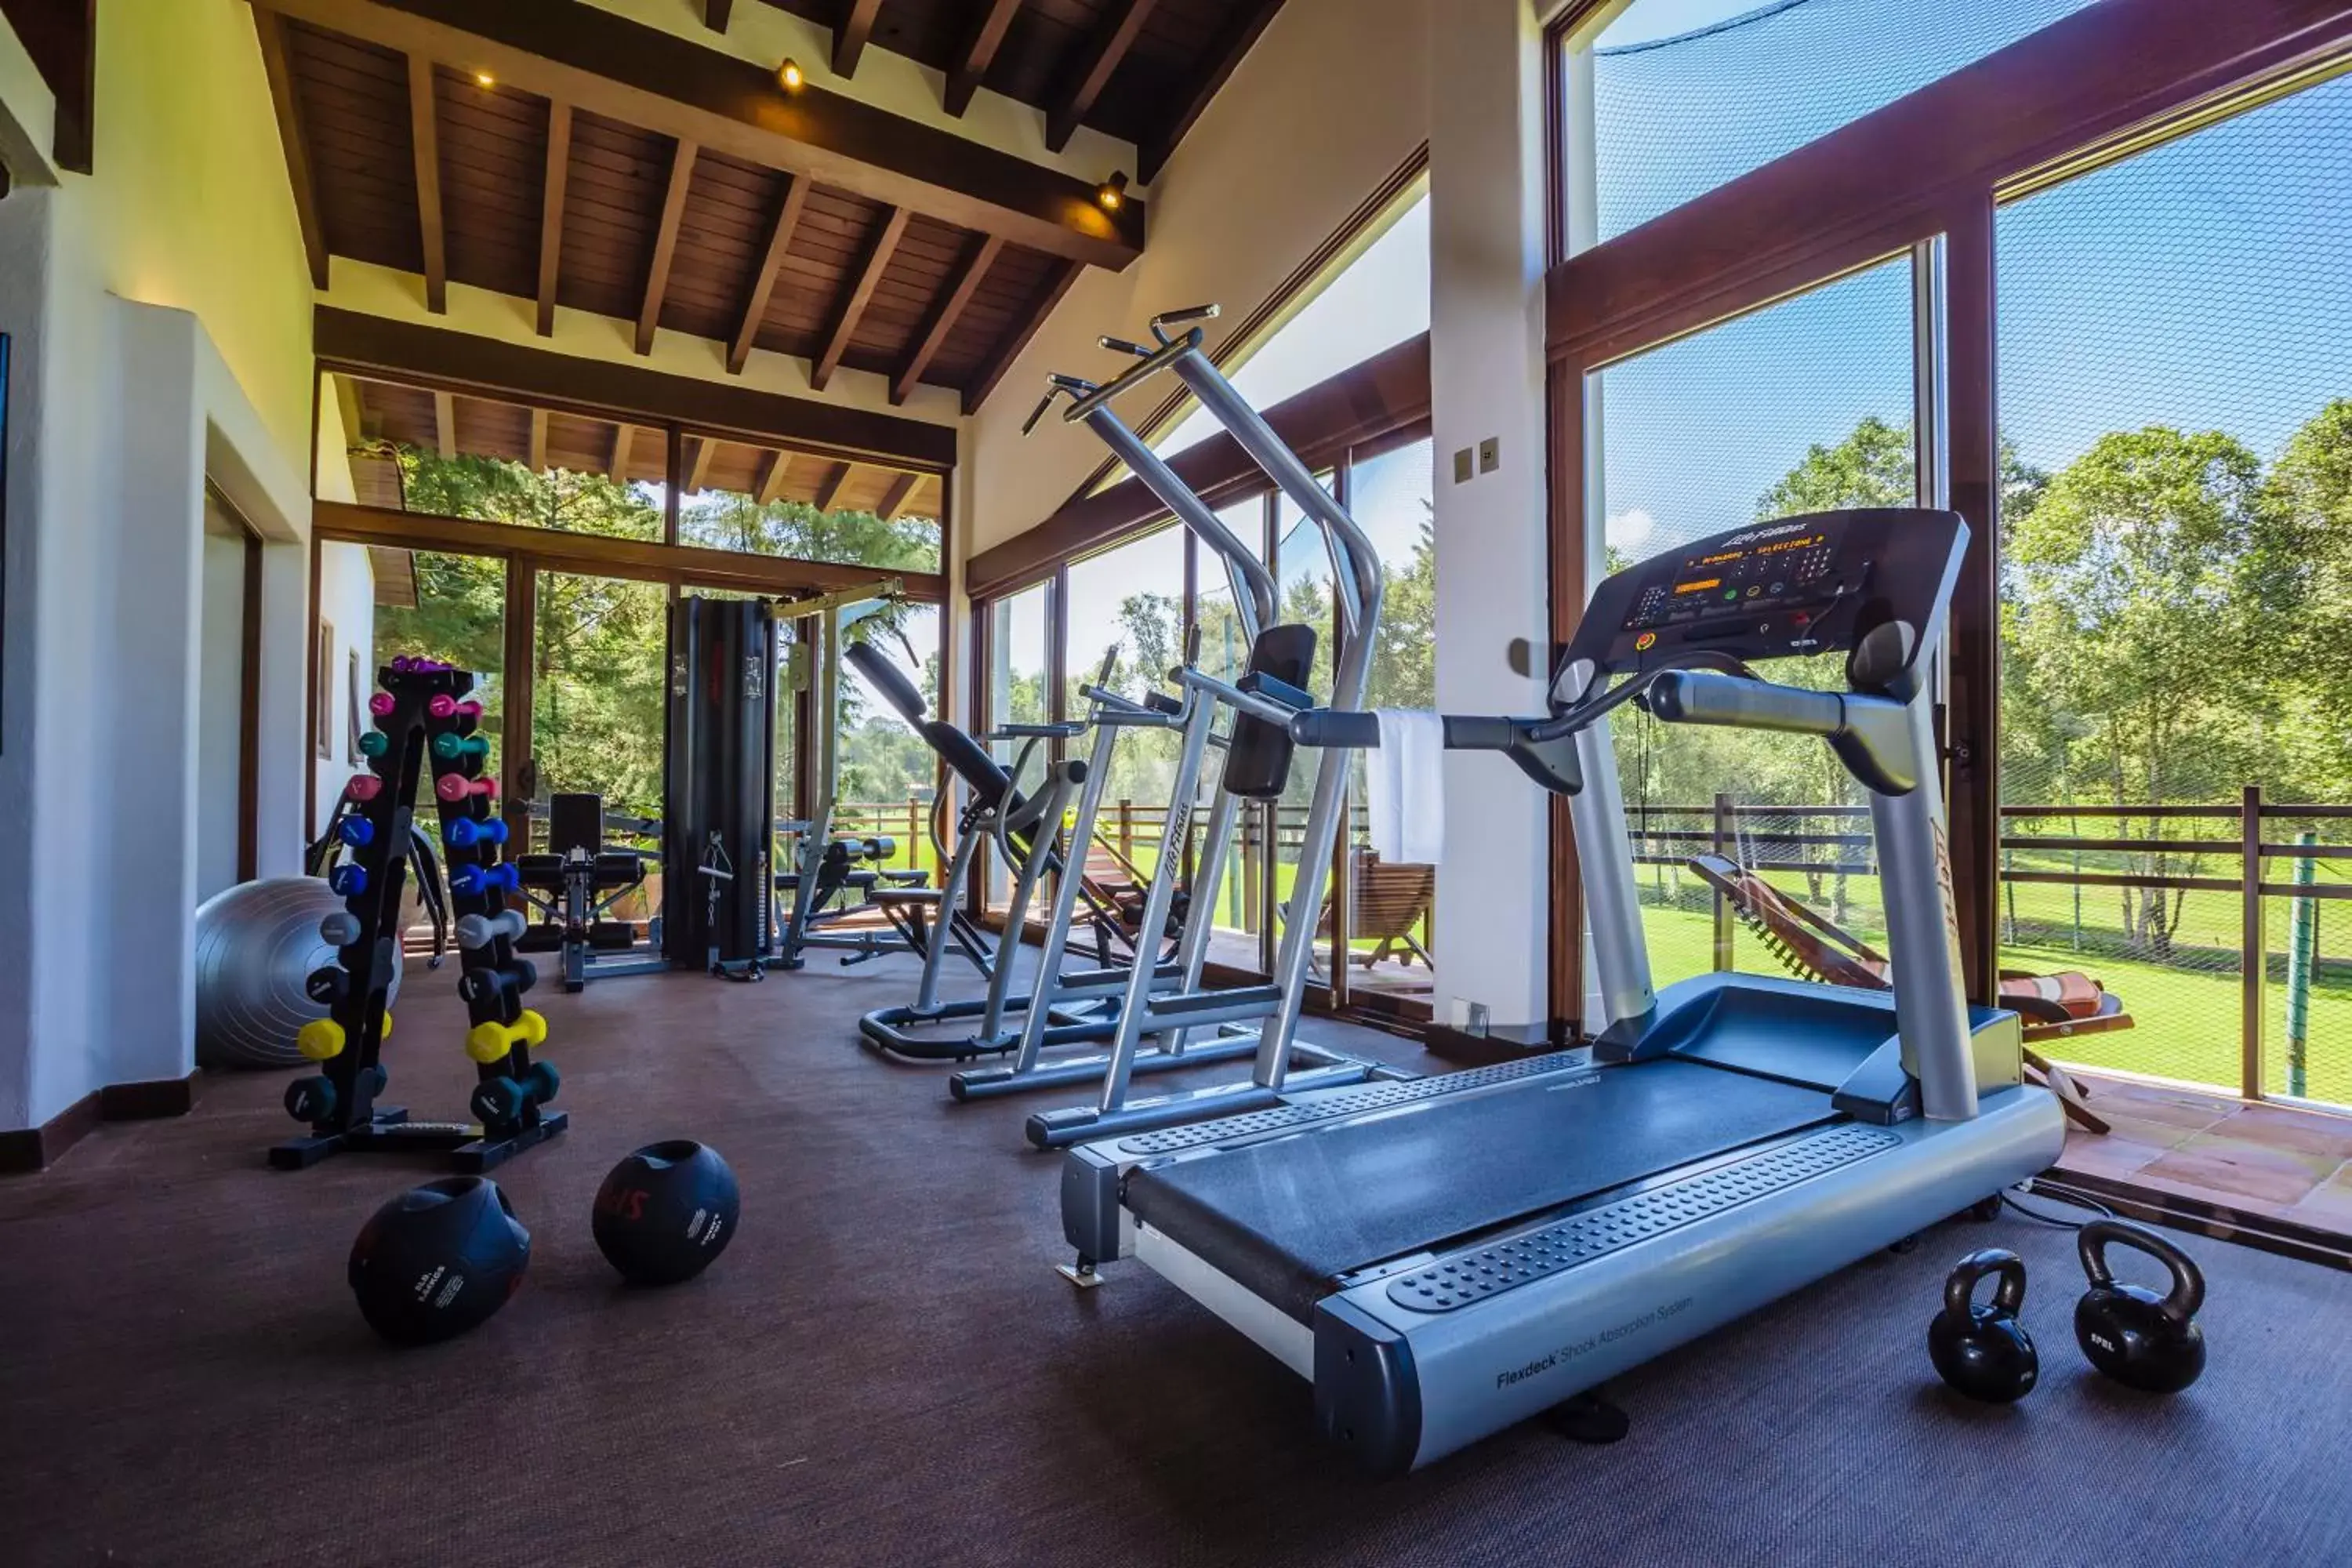 Fitness centre/facilities, Fitness Center/Facilities in Hotel Avandaro Golf & Spa Resort